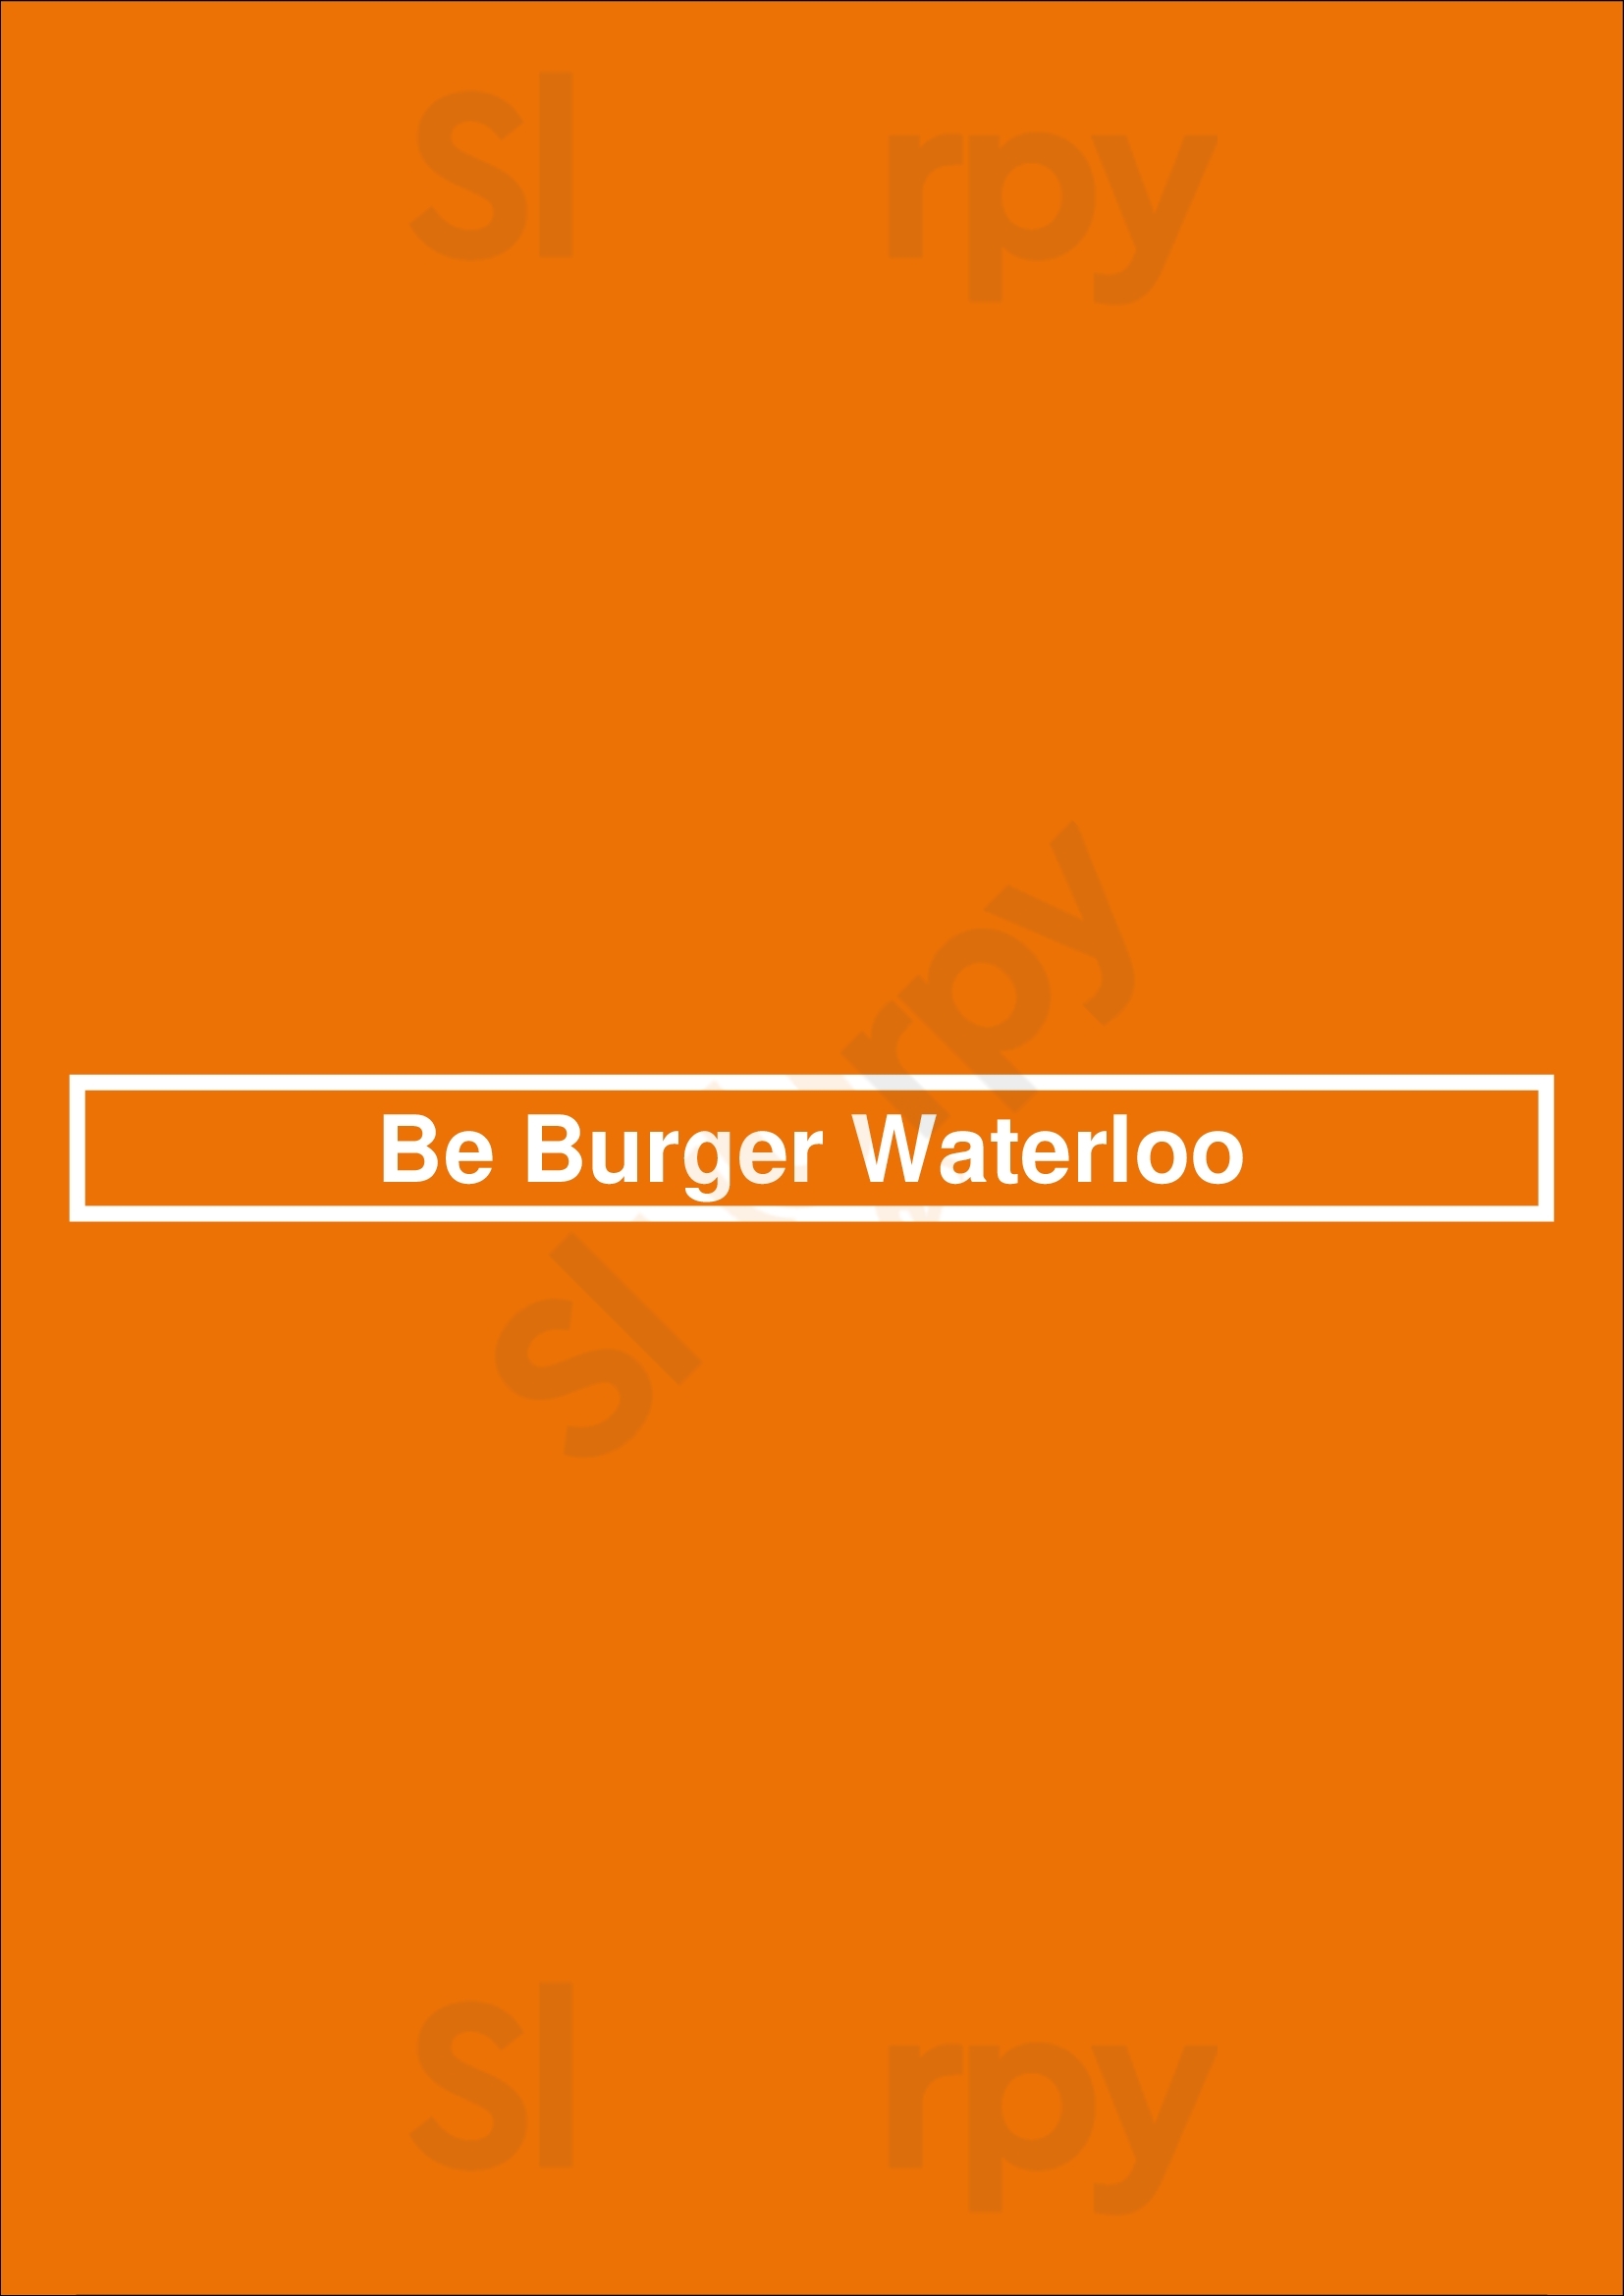 Be Burger Waterloo Waterloo Menu - 1